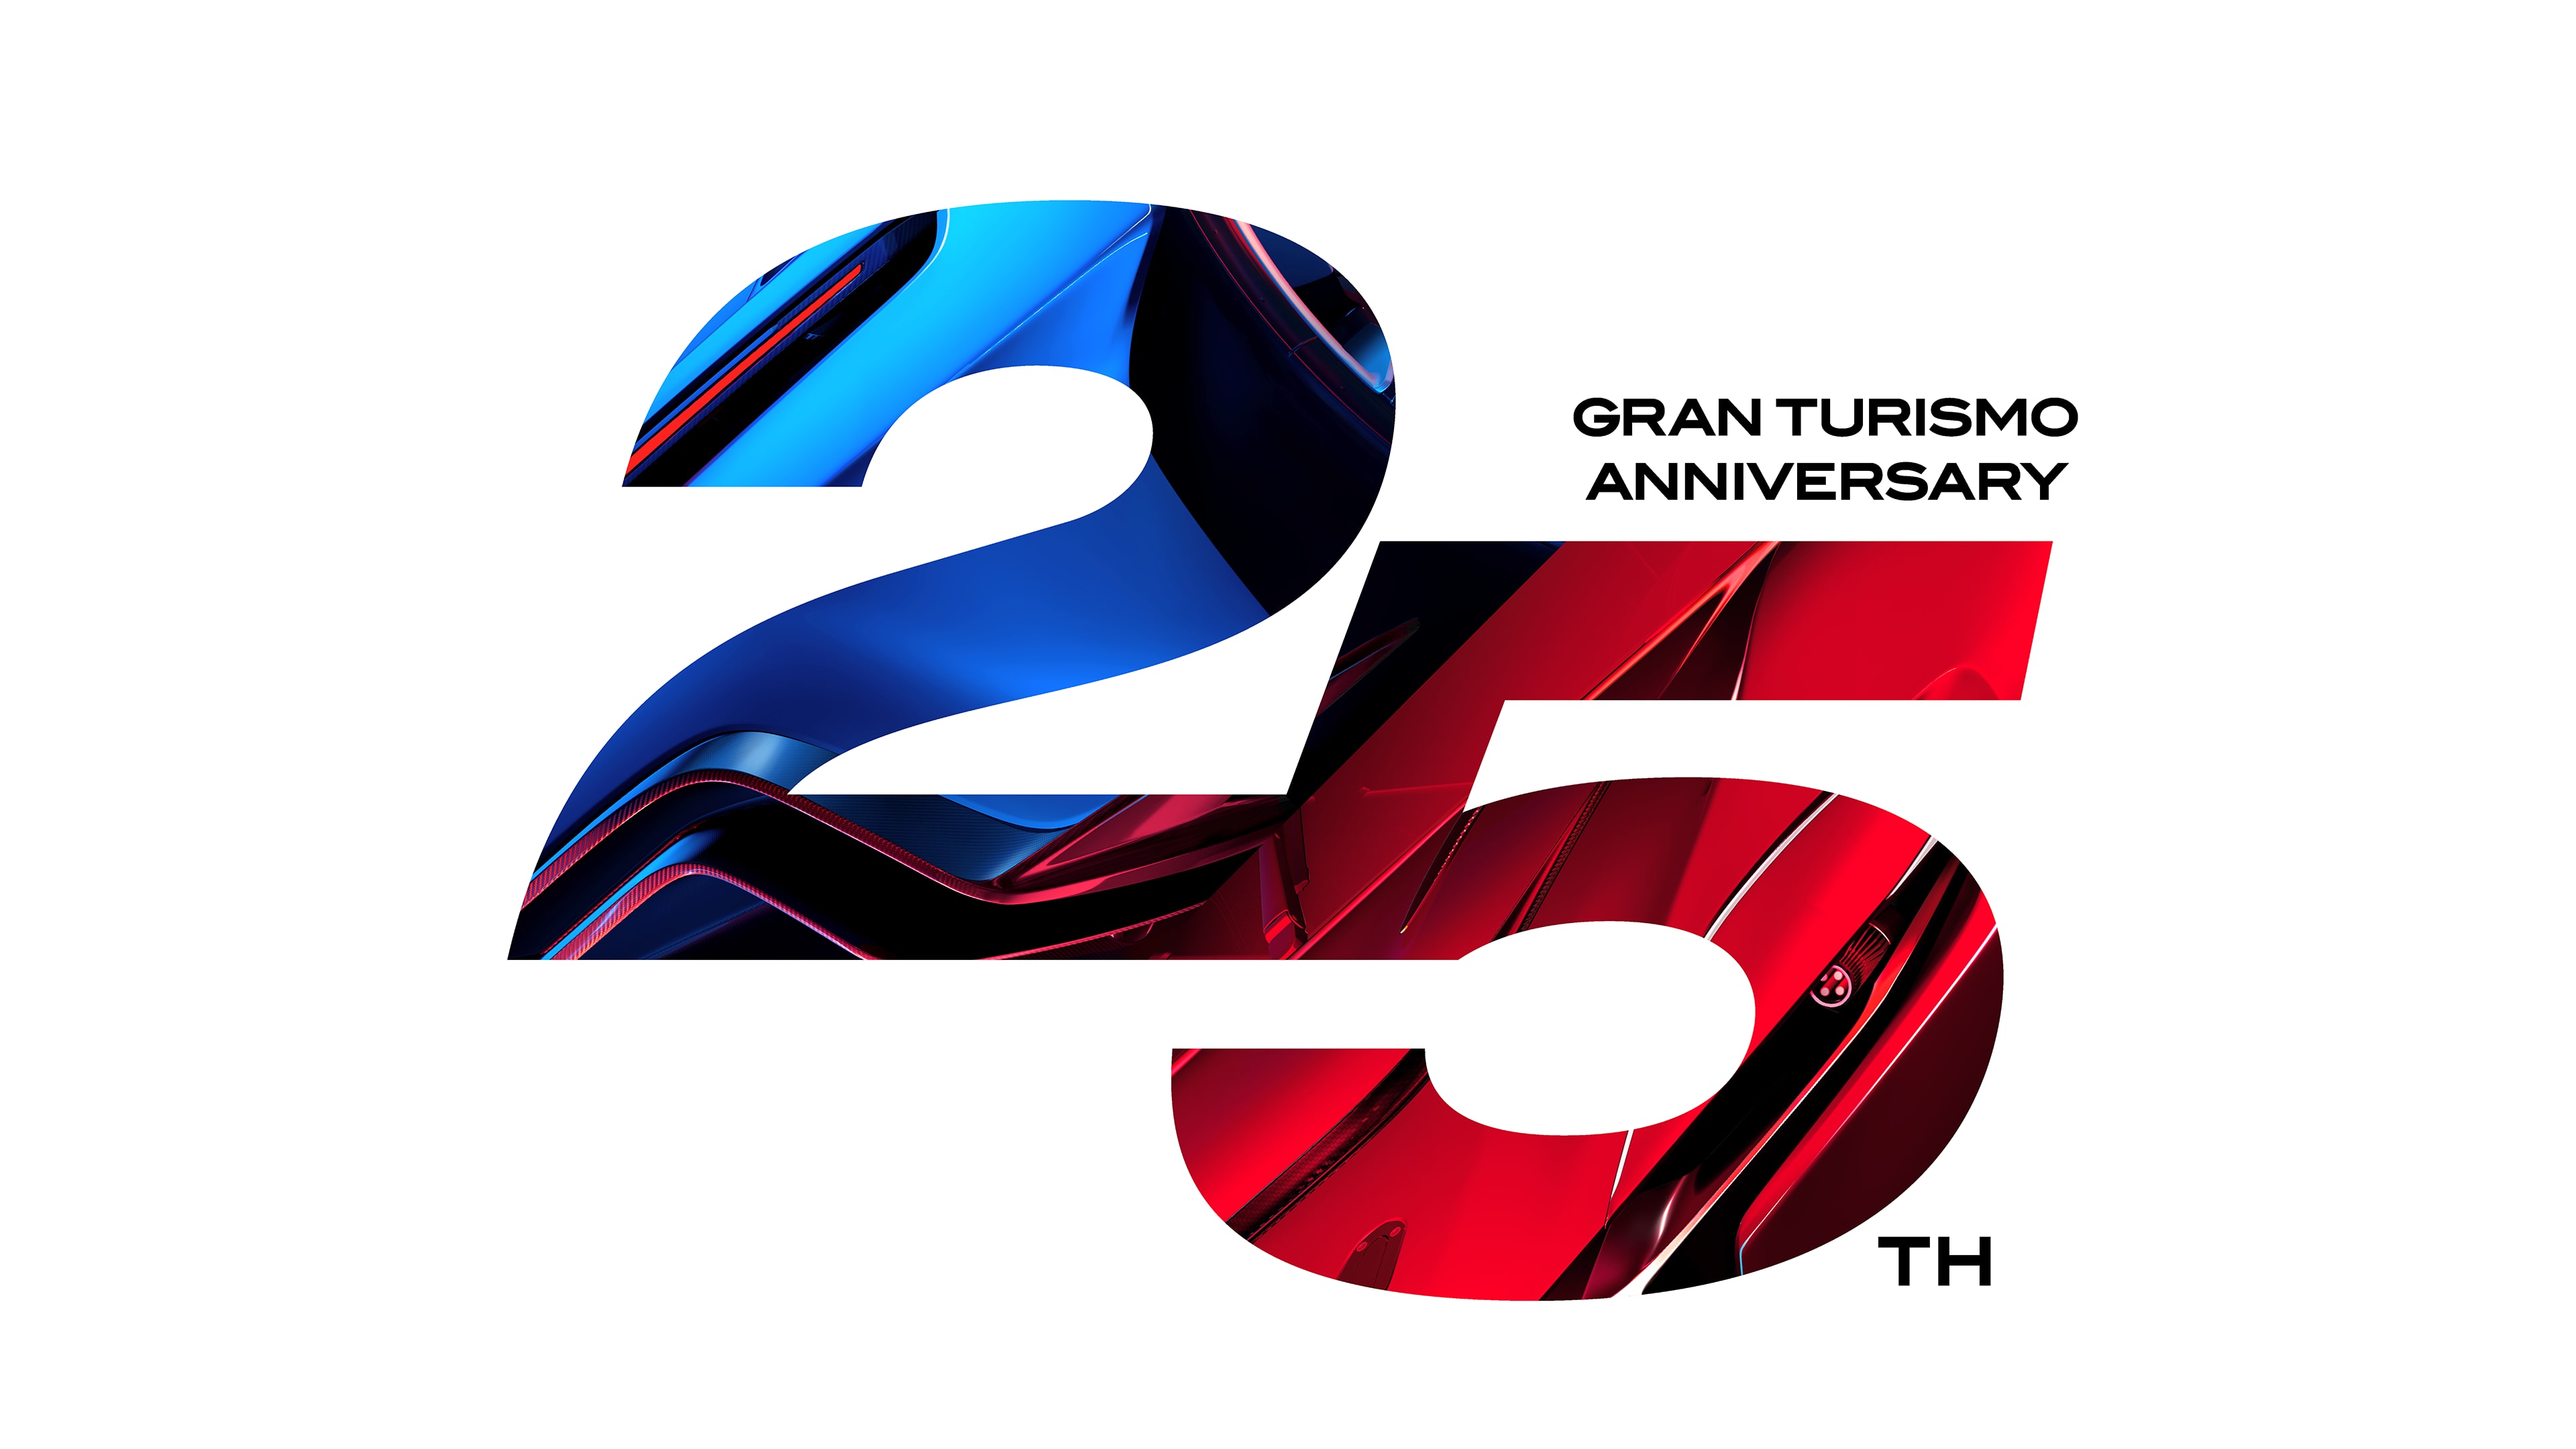 그란 투리스모 7 25주년 기념 디지털 디럭스 에디션 (중국어(간체자), 한국어, 태국어, 영어, 중국어(번체자))